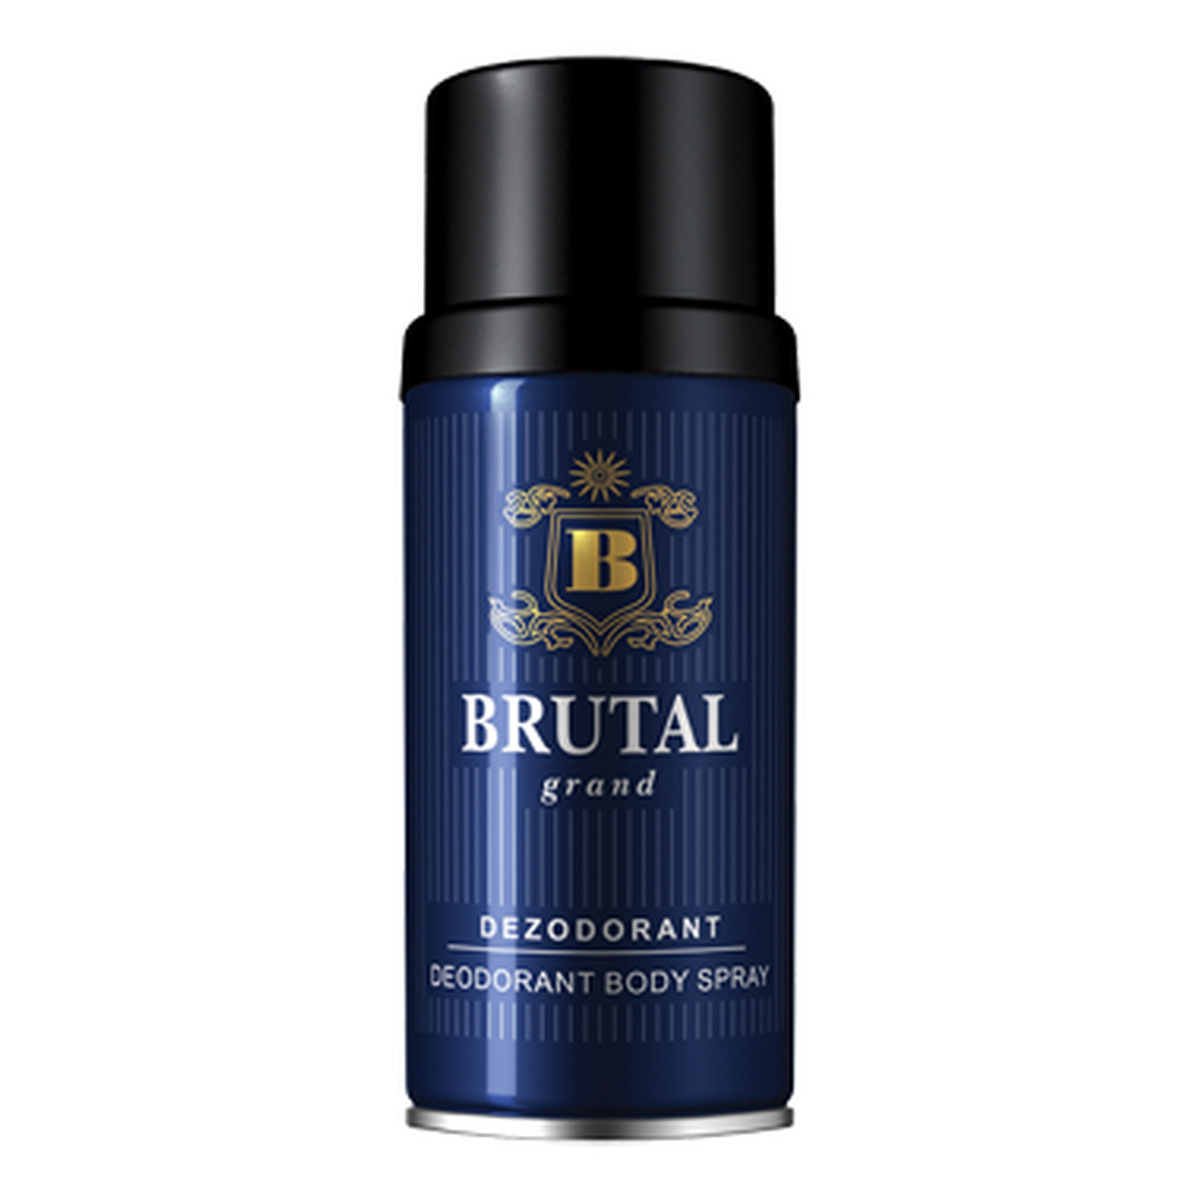 Brutal Grand Dezodorant Spray 150ml